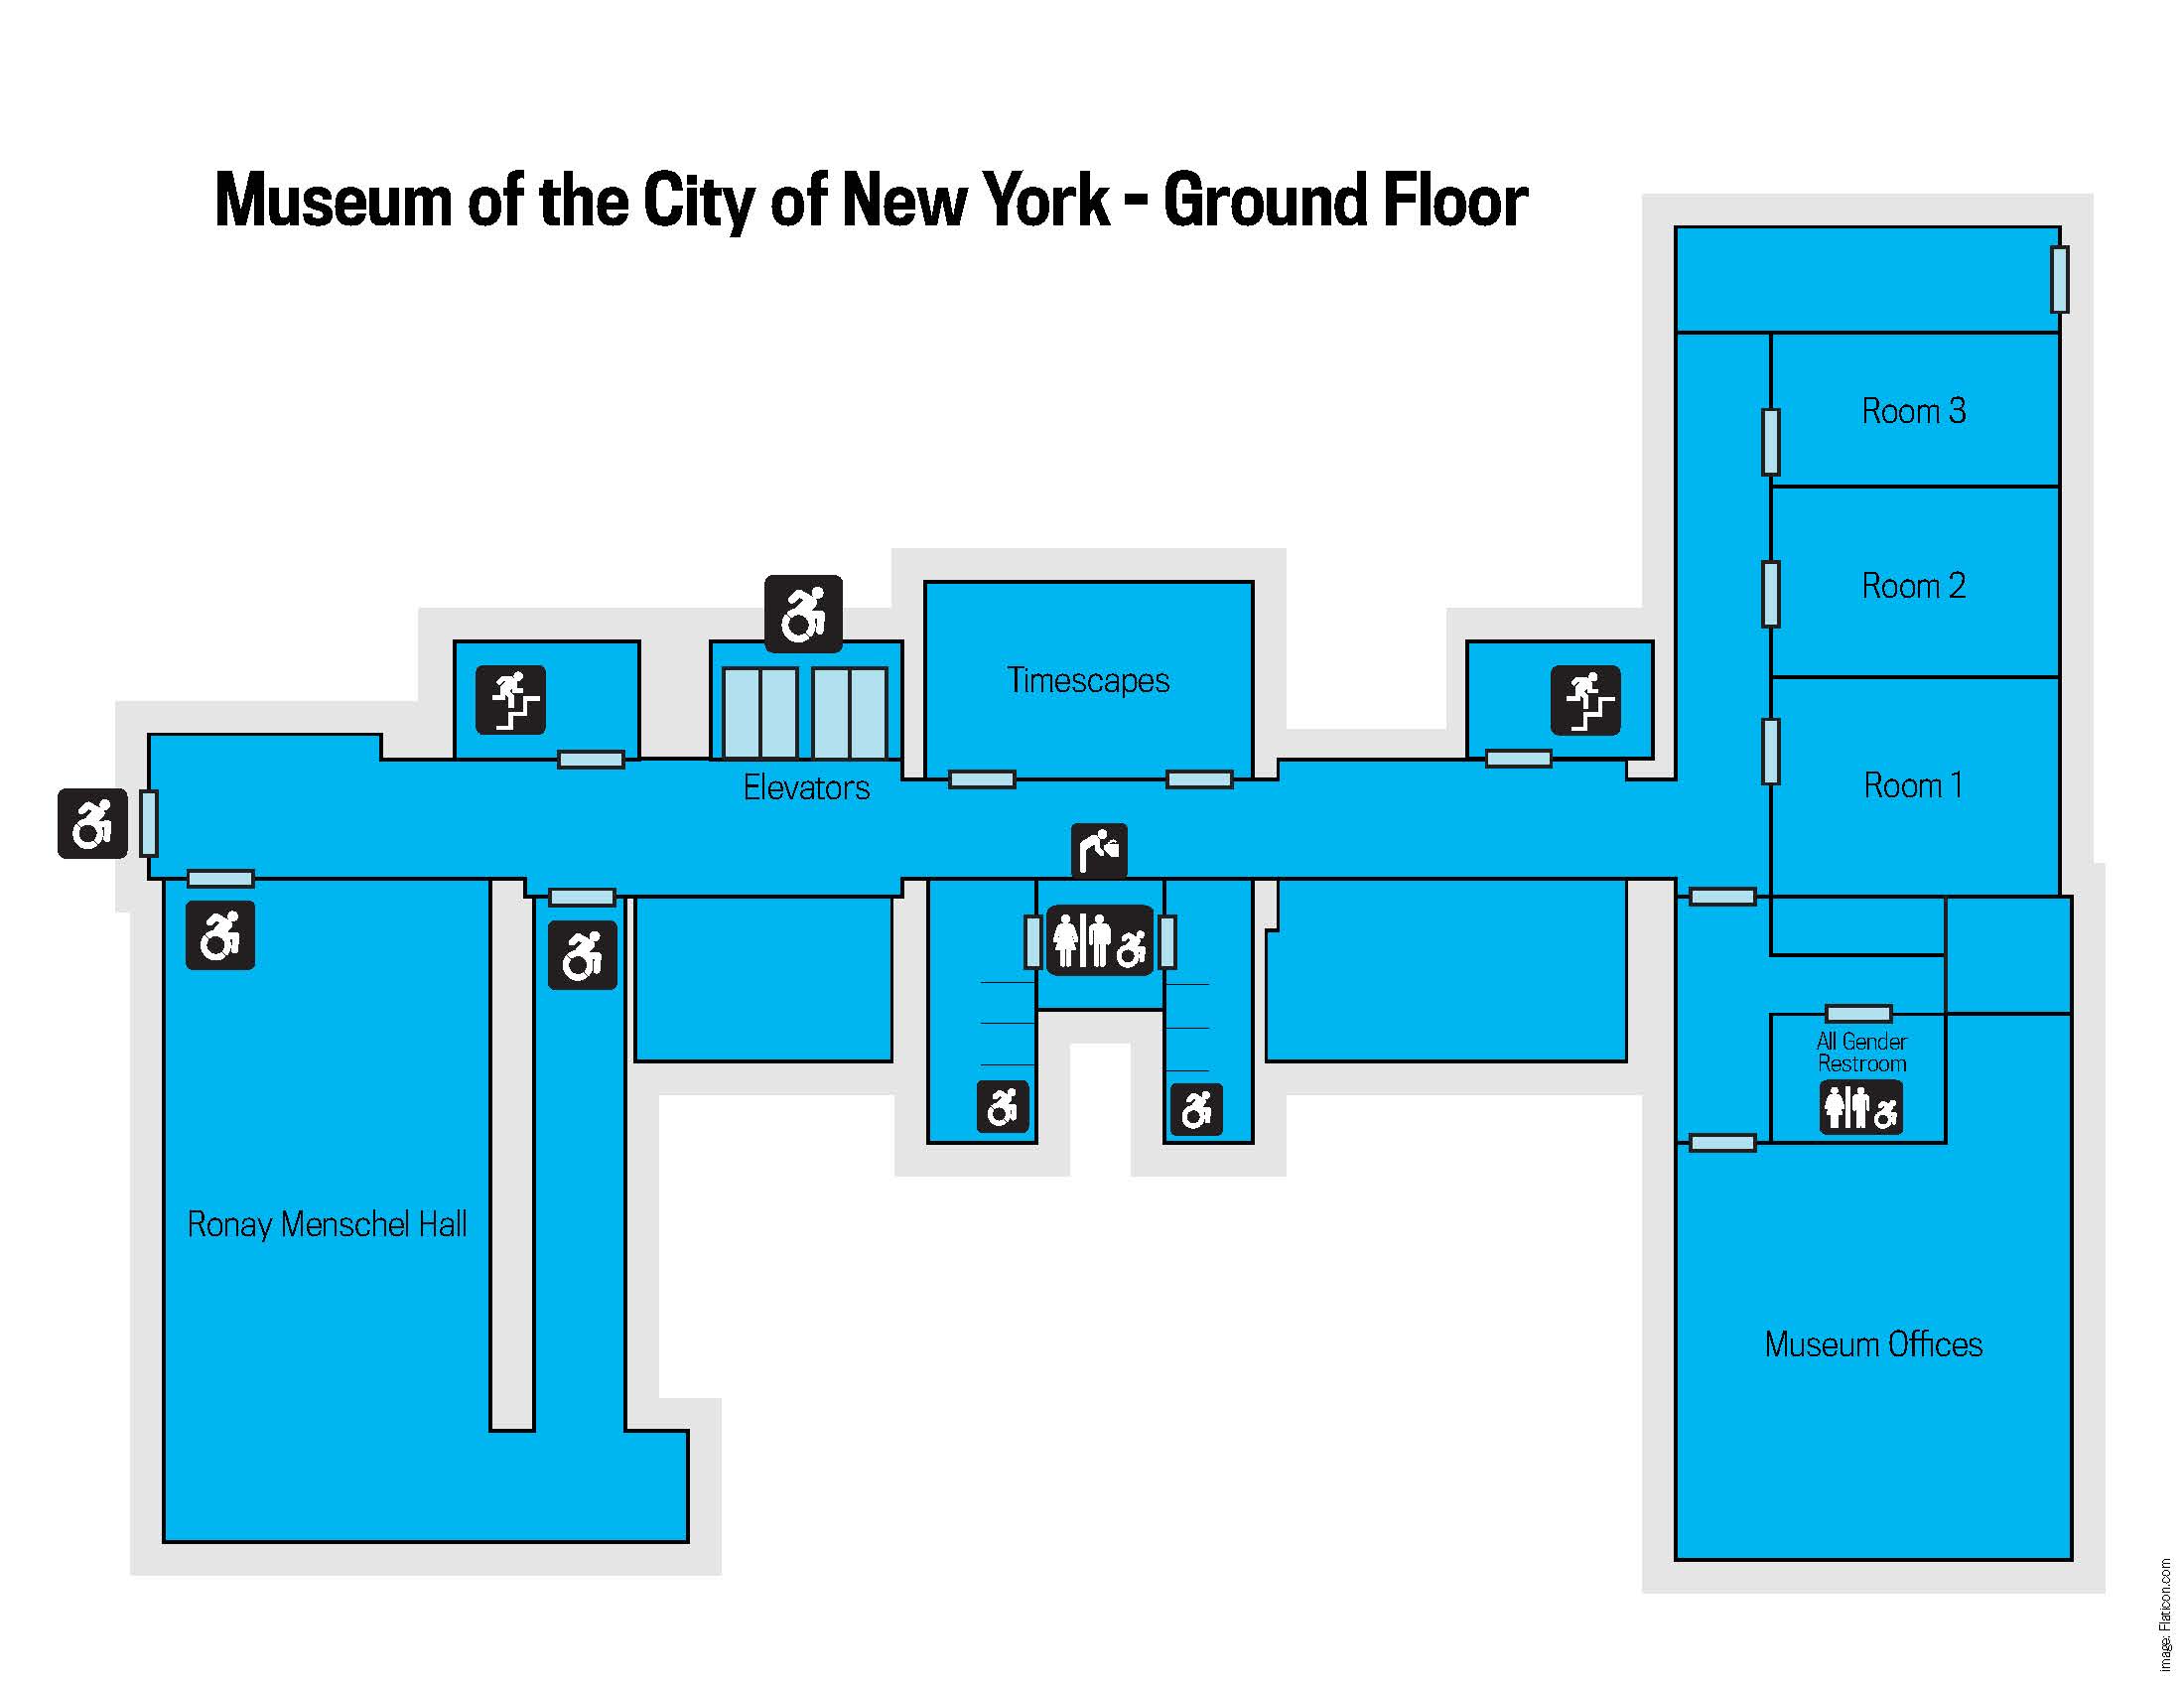 A floor plan map of the museum's ground floor. 